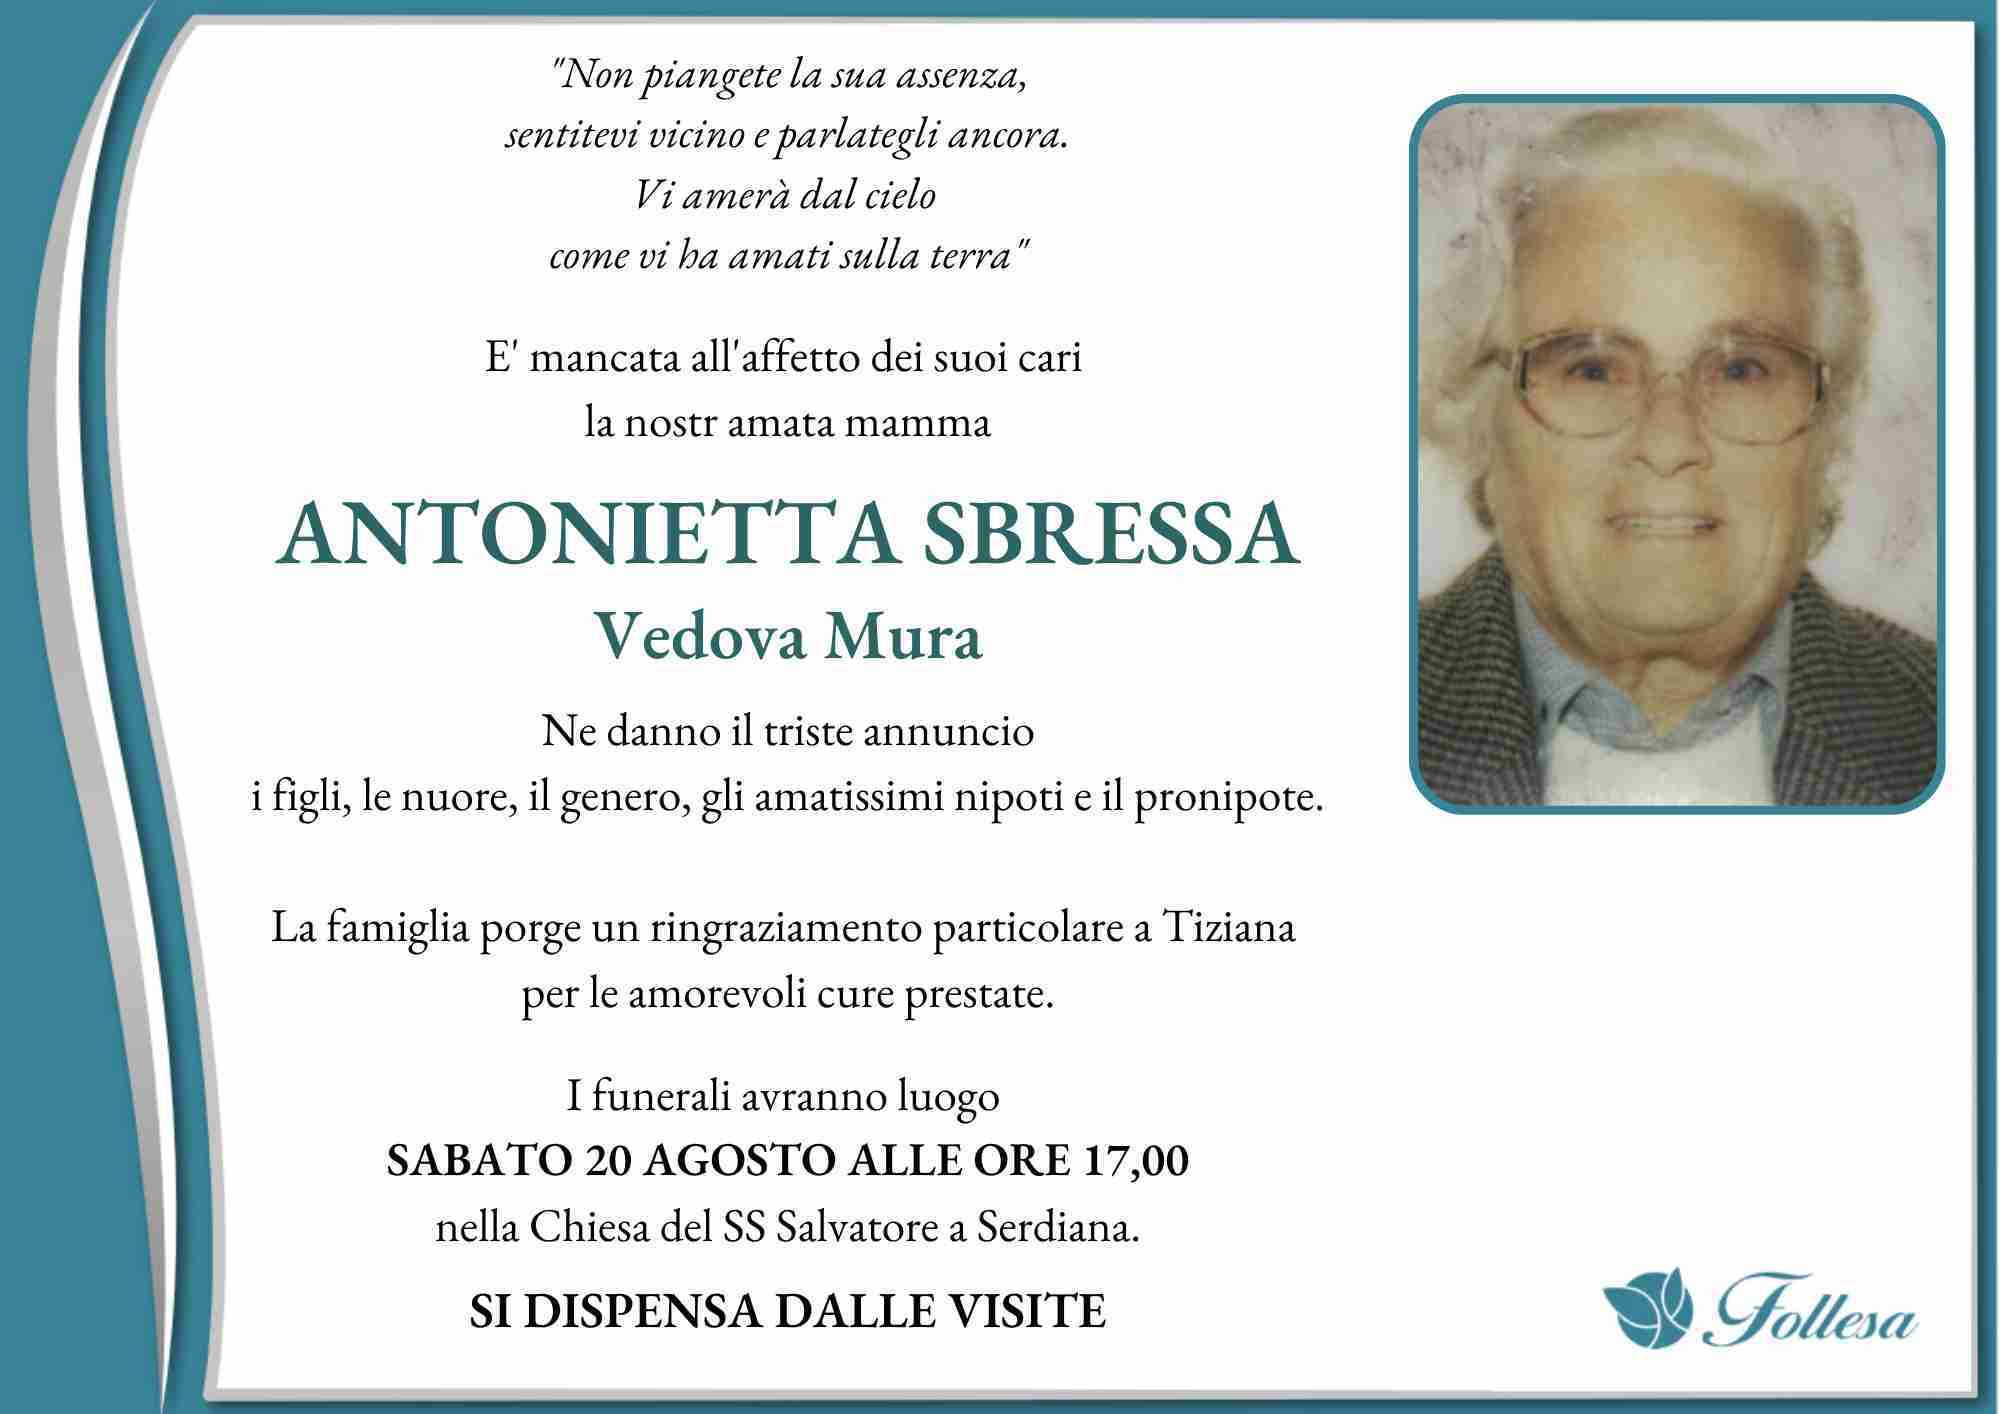 Antonietta Sbressa